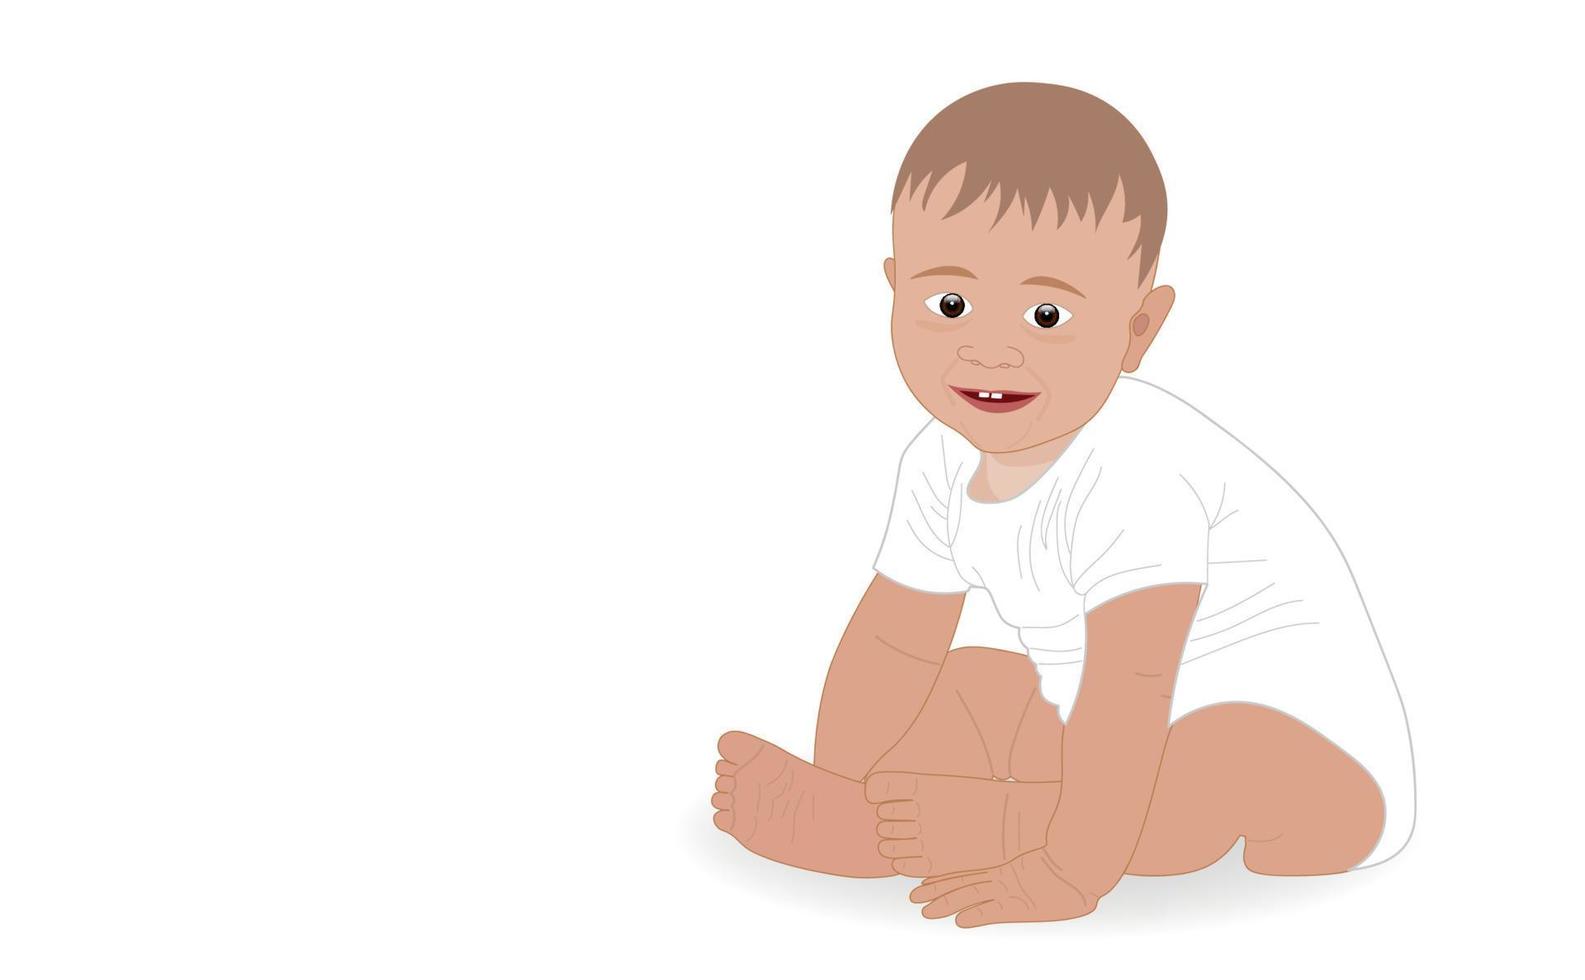 niño pequeño en una pose sentada a la derecha mira y sonríe sobre un fondo blanco. copie el espacio cartel médico de información. ilustración vectorial vector